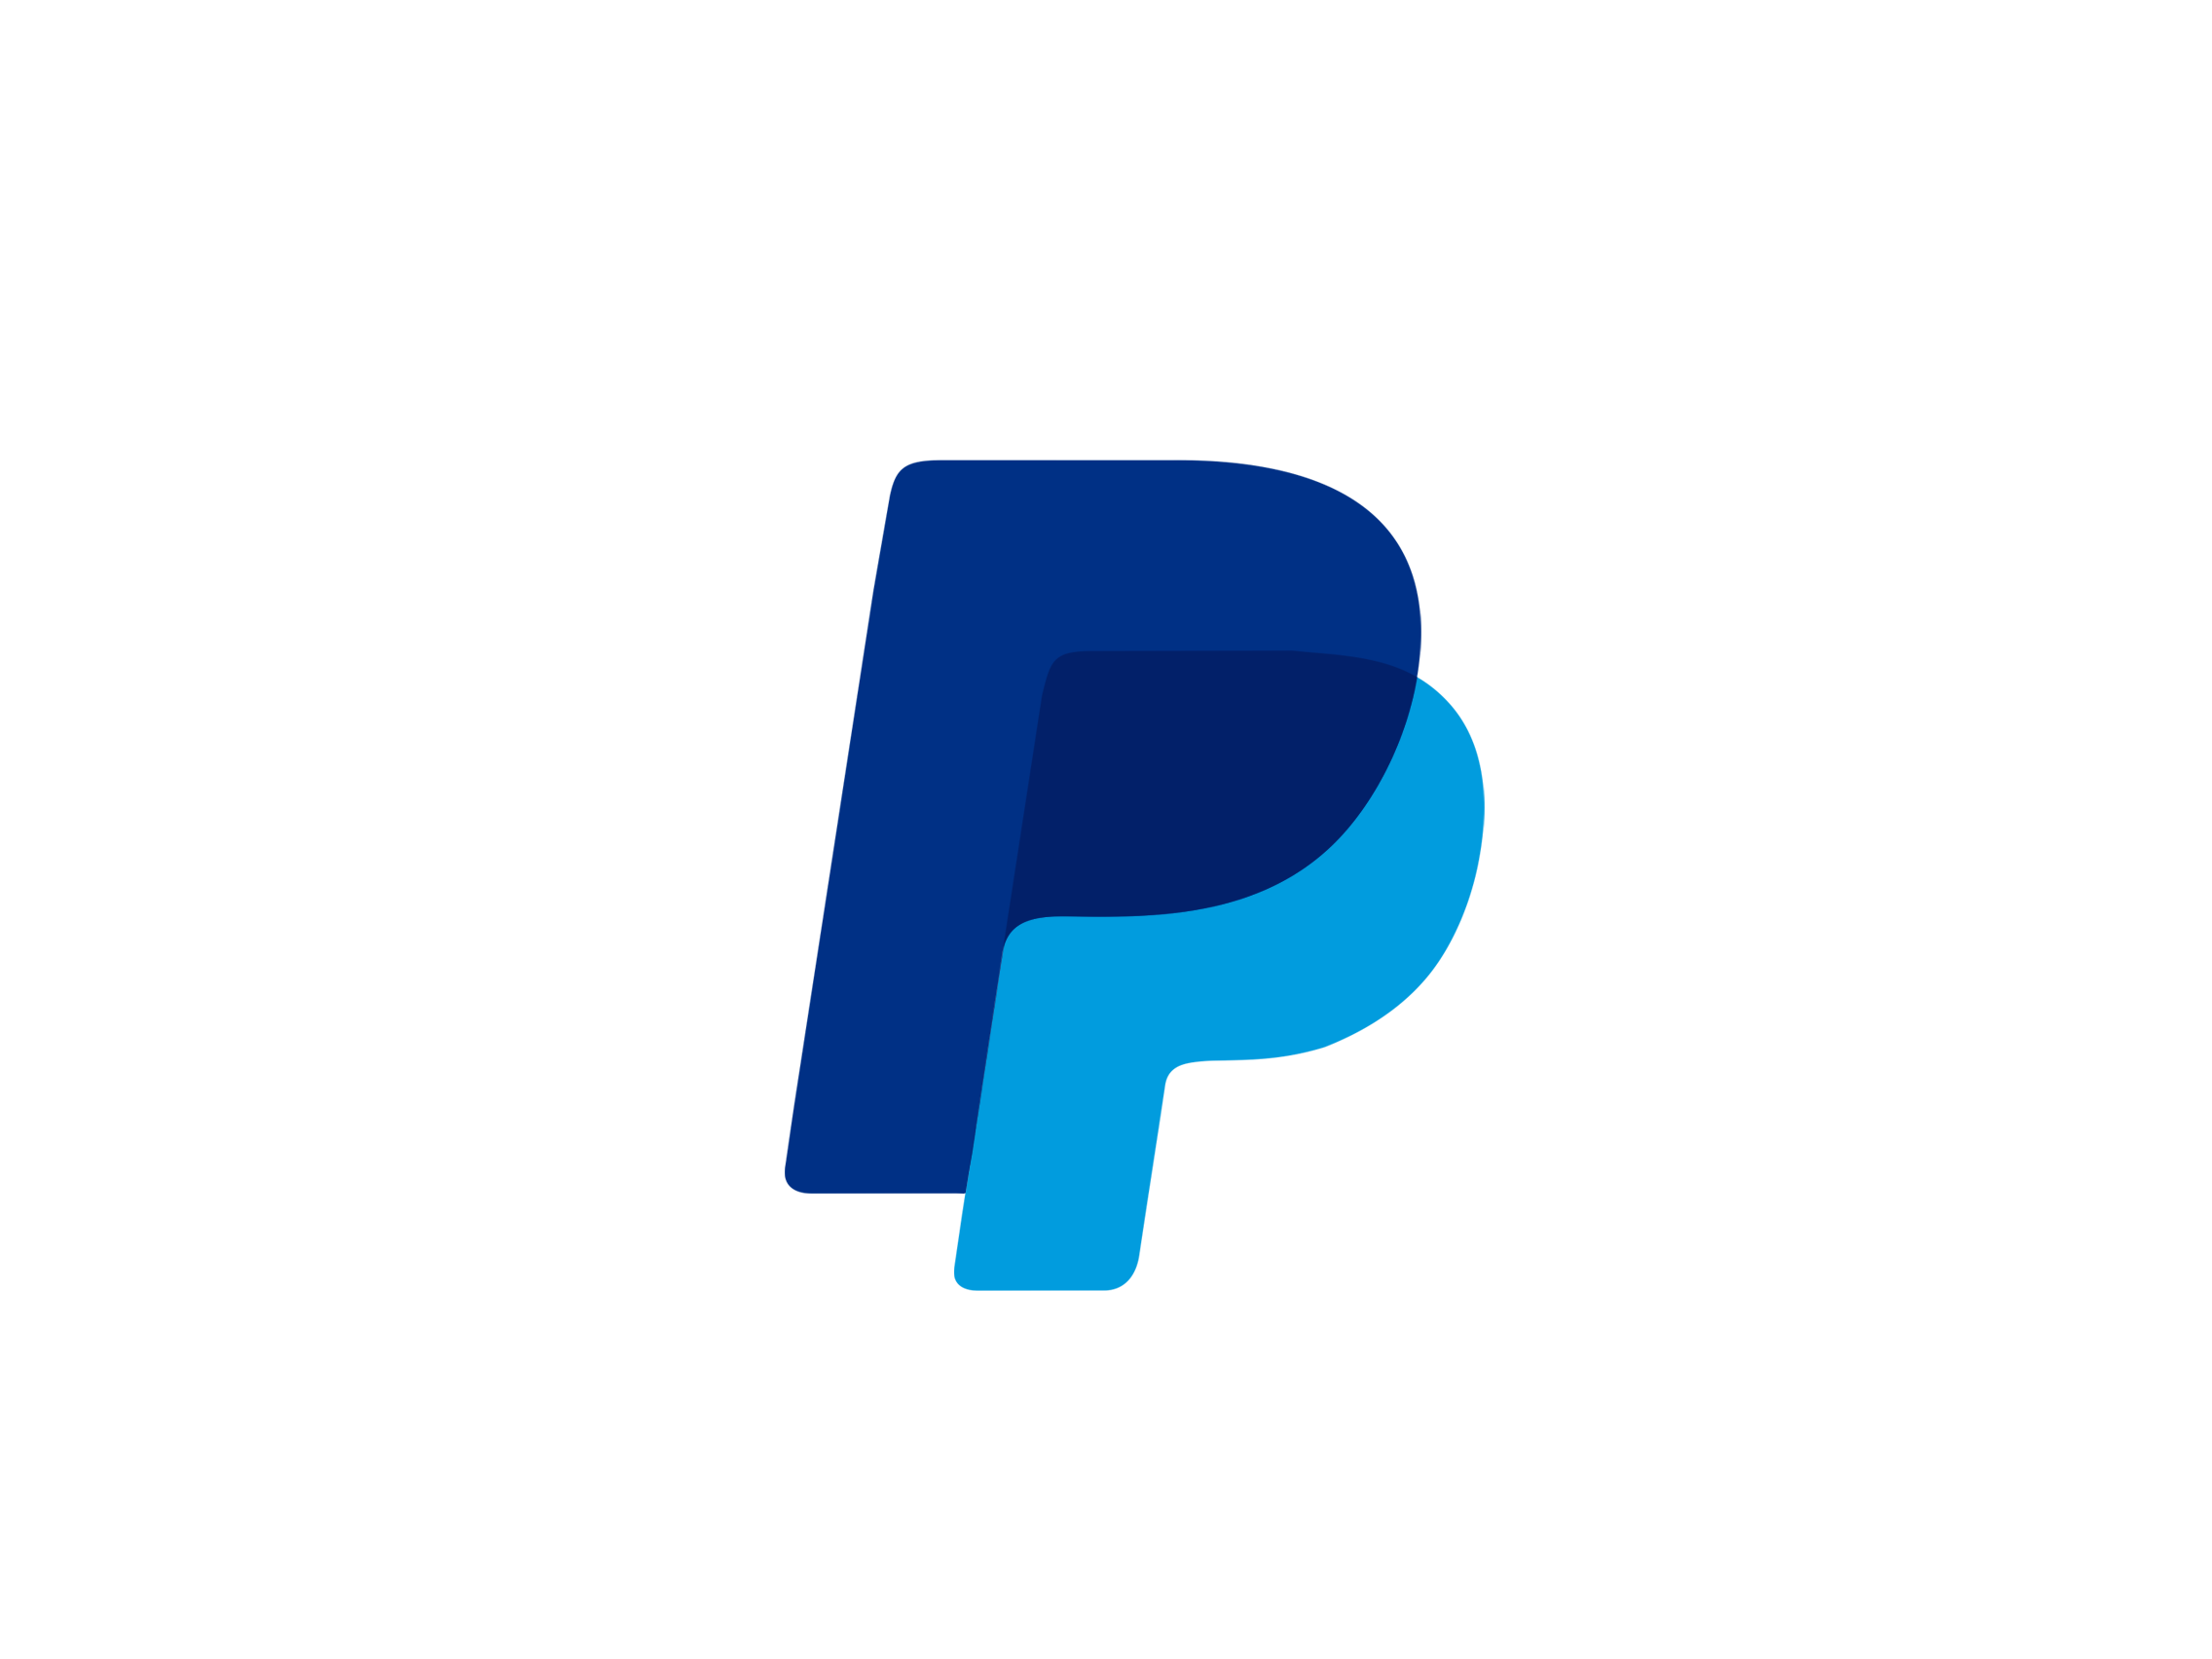 Biểu tượng Paypal